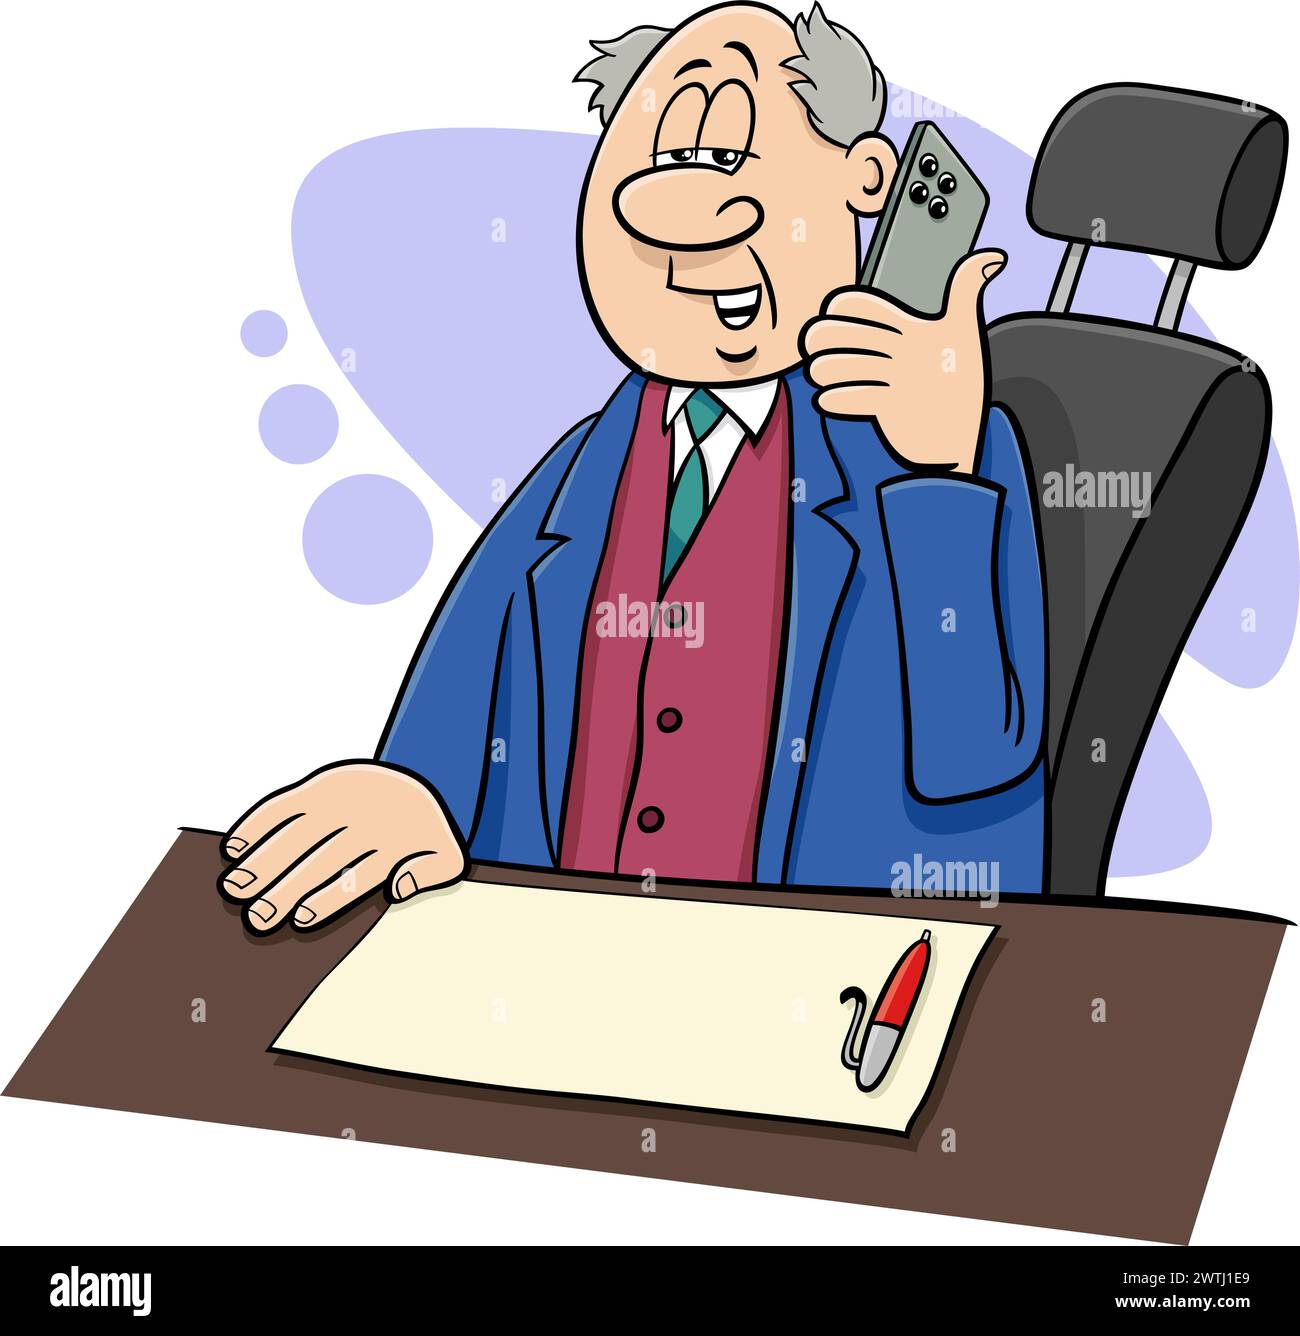 Illustration de dessin animé de patron ou d'homme d'affaires derrière le bureau parlant au téléphone Illustration de Vecteur